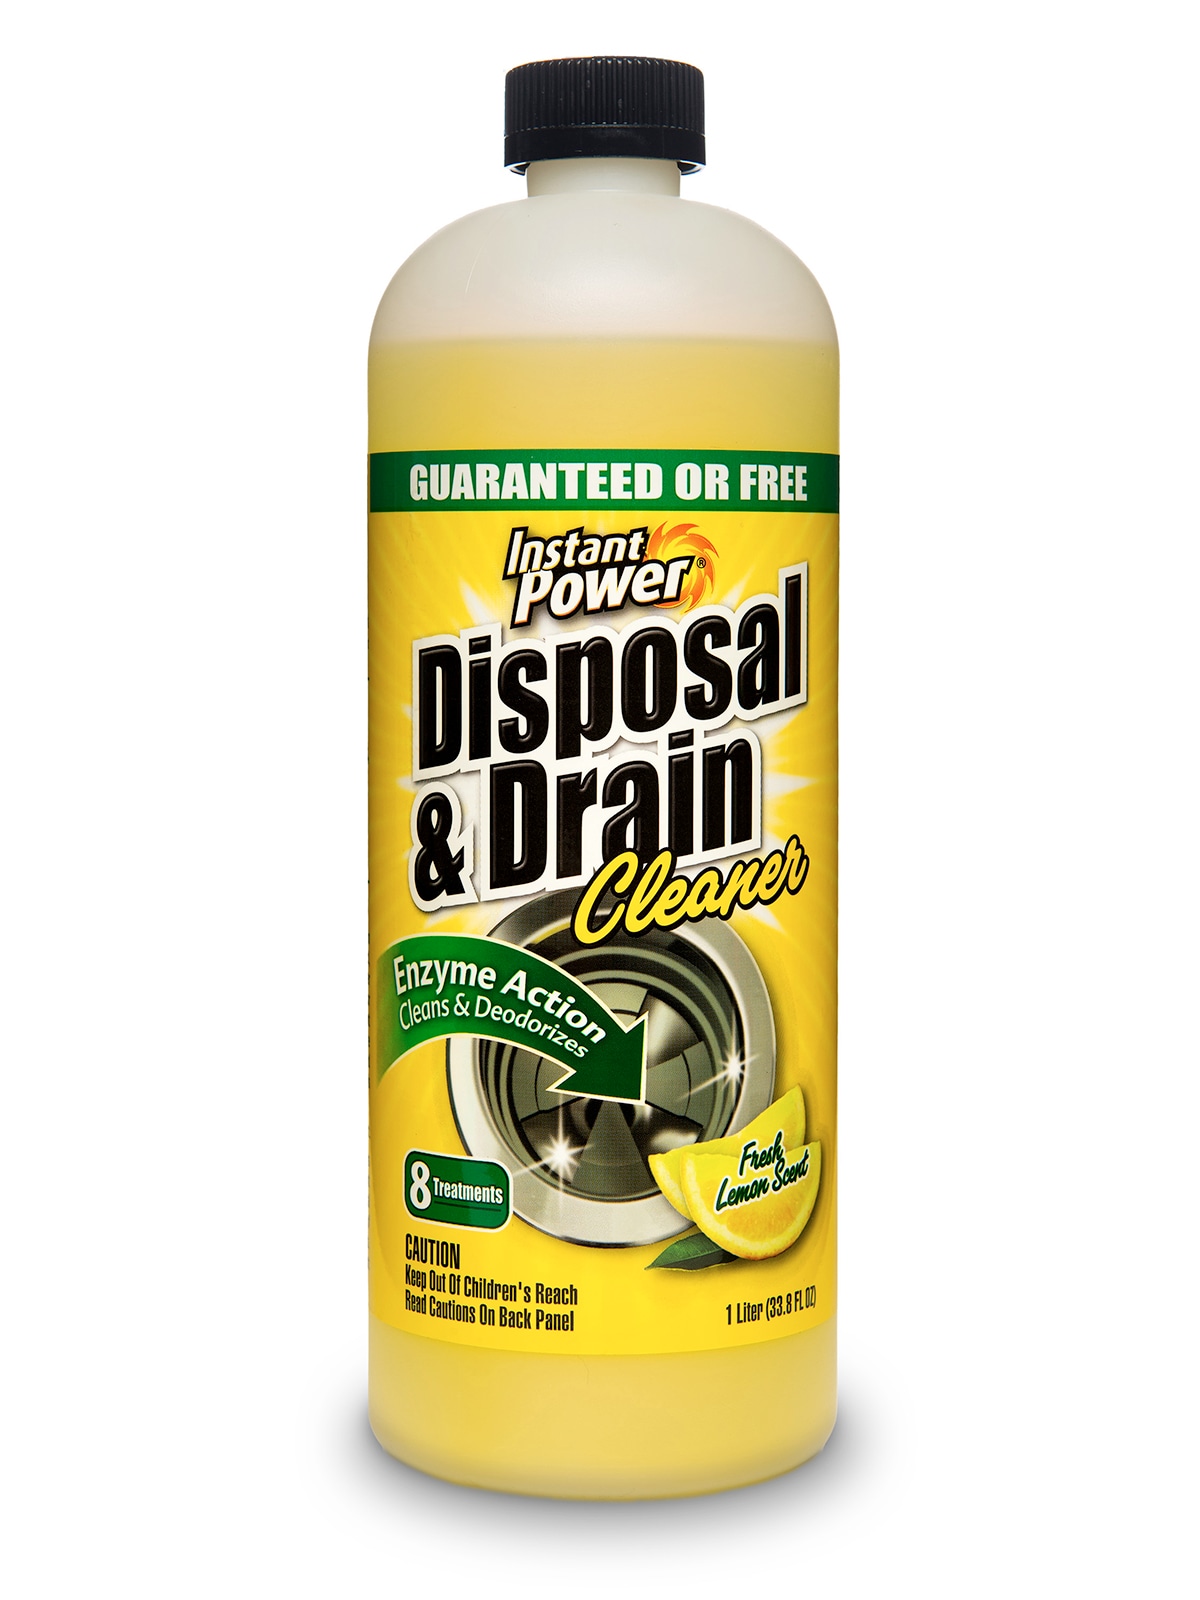 Instant Power Disposal & Drain Cleaner, Lemon - 33.8 fl oz bottle